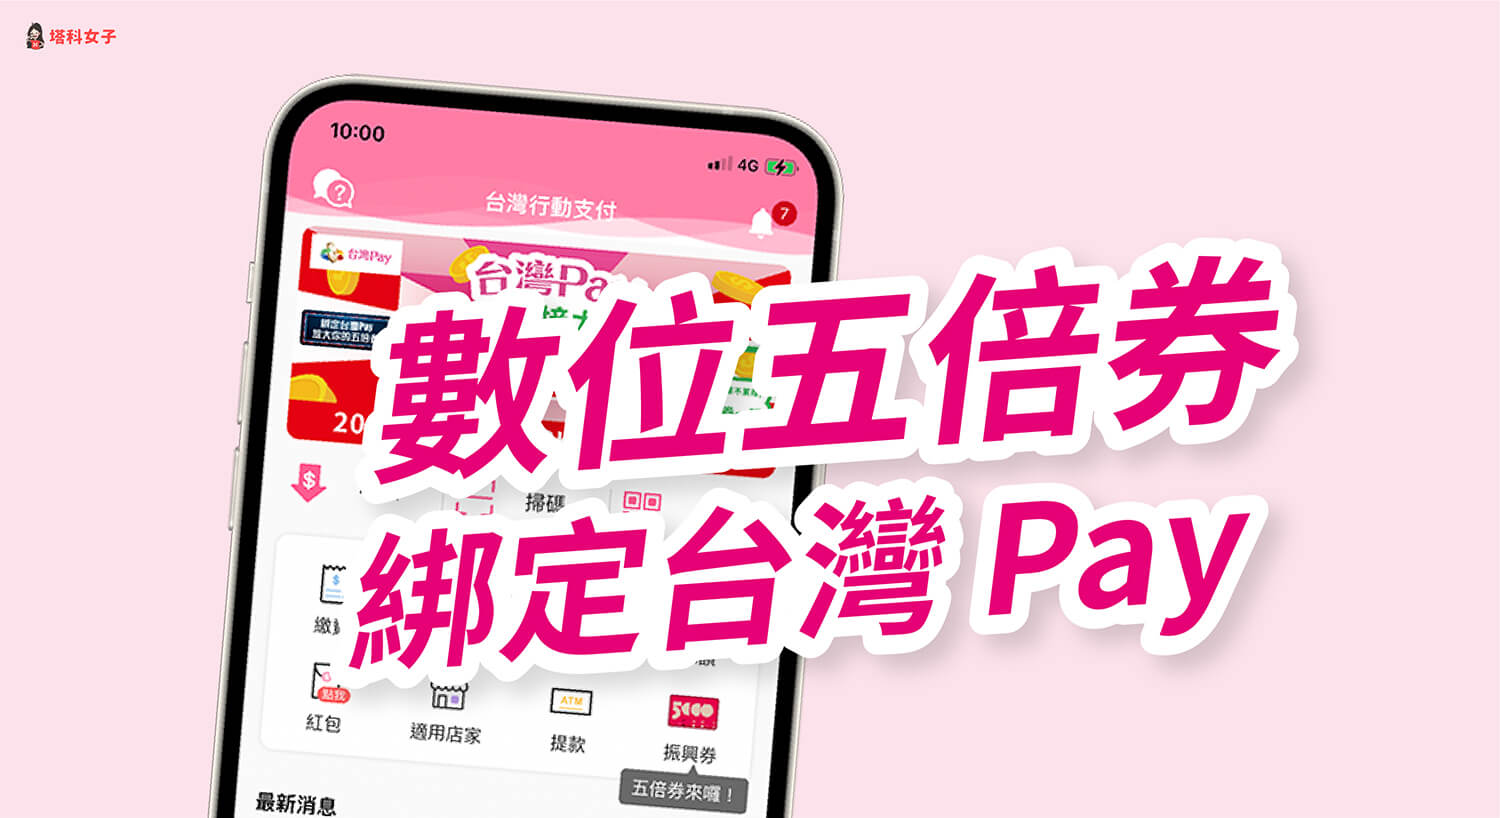 台灣 Pay 五倍券綁定教學，綁定後使用台灣 Pay 掃碼支付即可累積消費